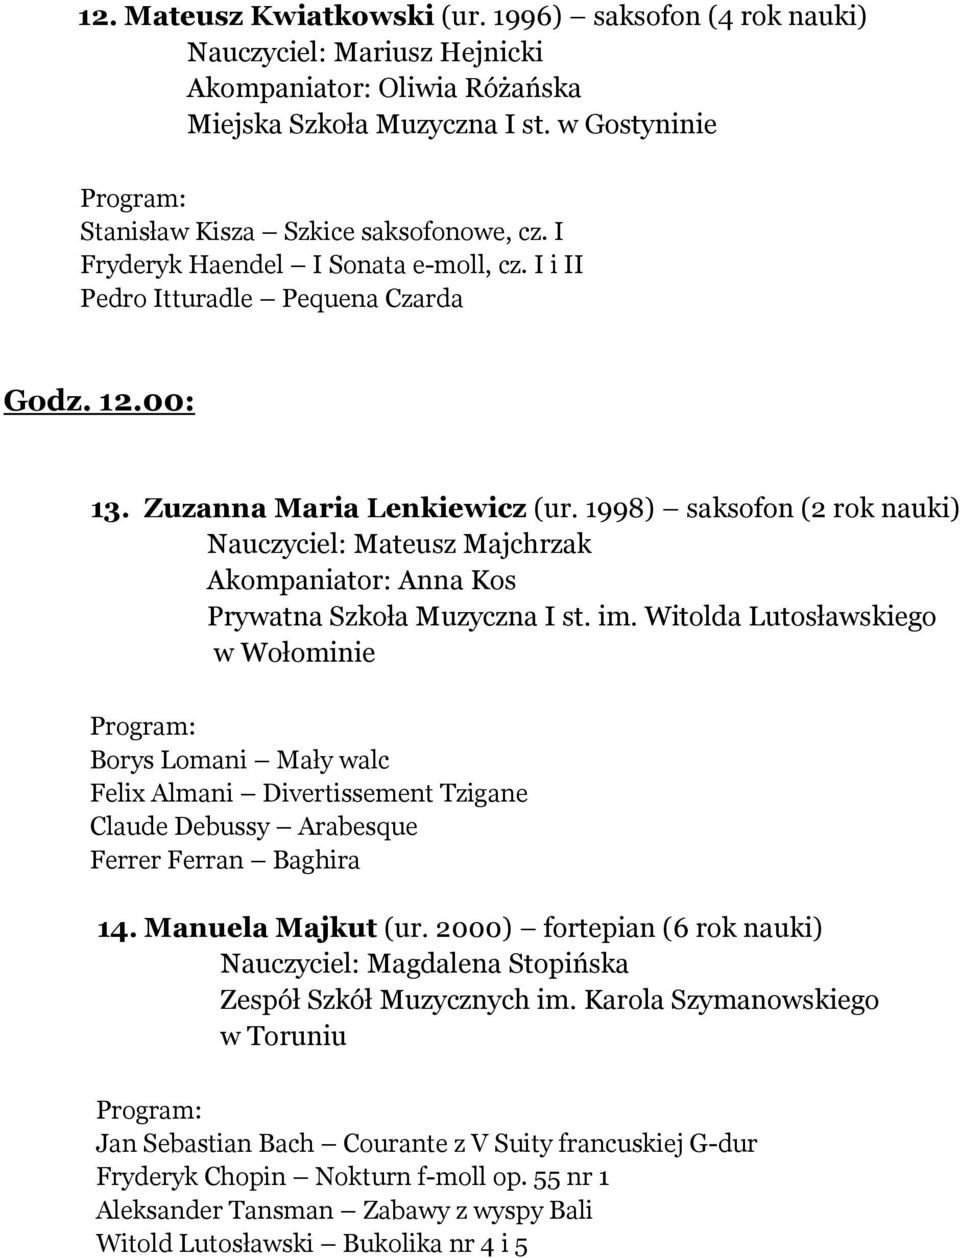 1998) saksofon (2 rok nauki) Nauczyciel: Mateusz Majchrzak Akompaniator: Anna Kos Prywatna Szkoła Muzyczna I st. im.